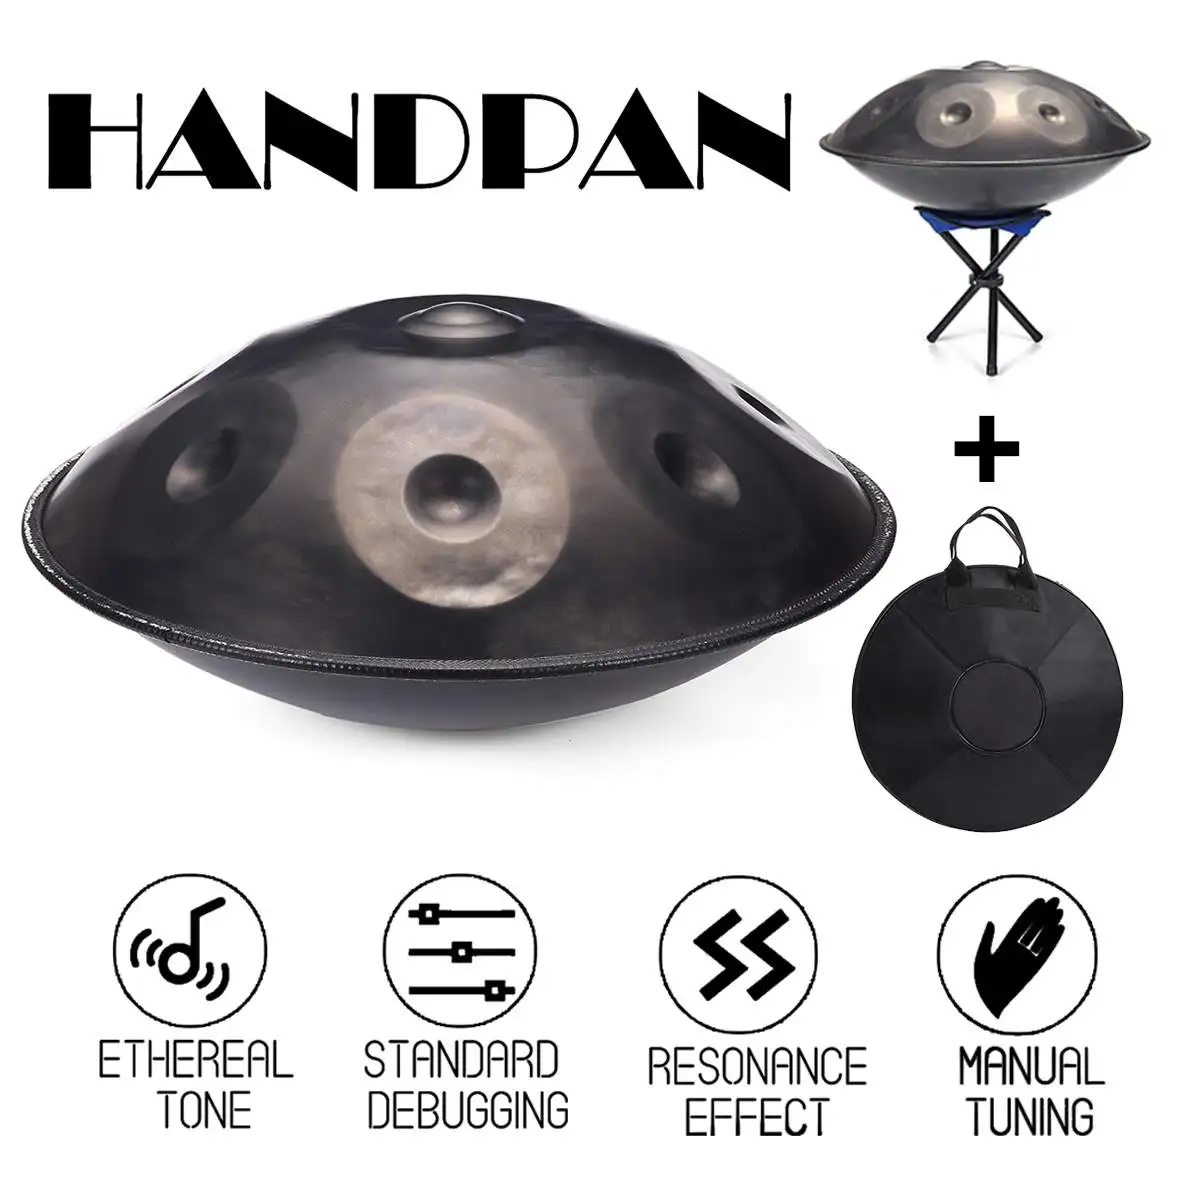 A/C/D/G/F Мелодия Handpan ручной работы производительность Музыкальный барабан HandPan углеродистая сталь антикварные Ударные музыкальные инструменты набор подарков